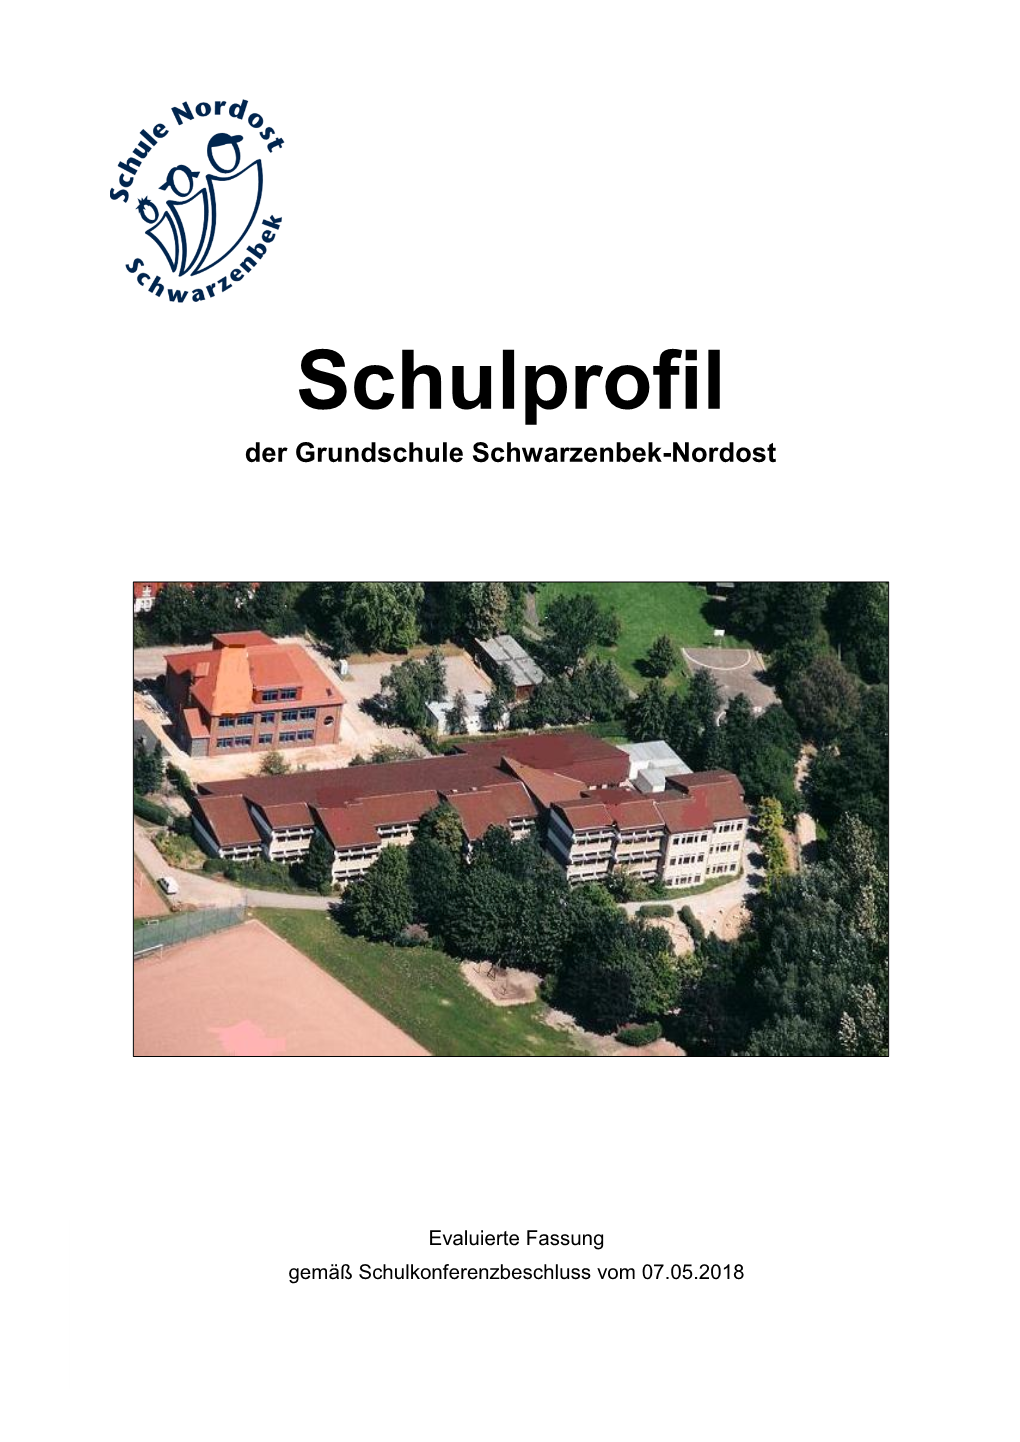 Schulprofil Der Grundschule Schwarzenbek-Nordost